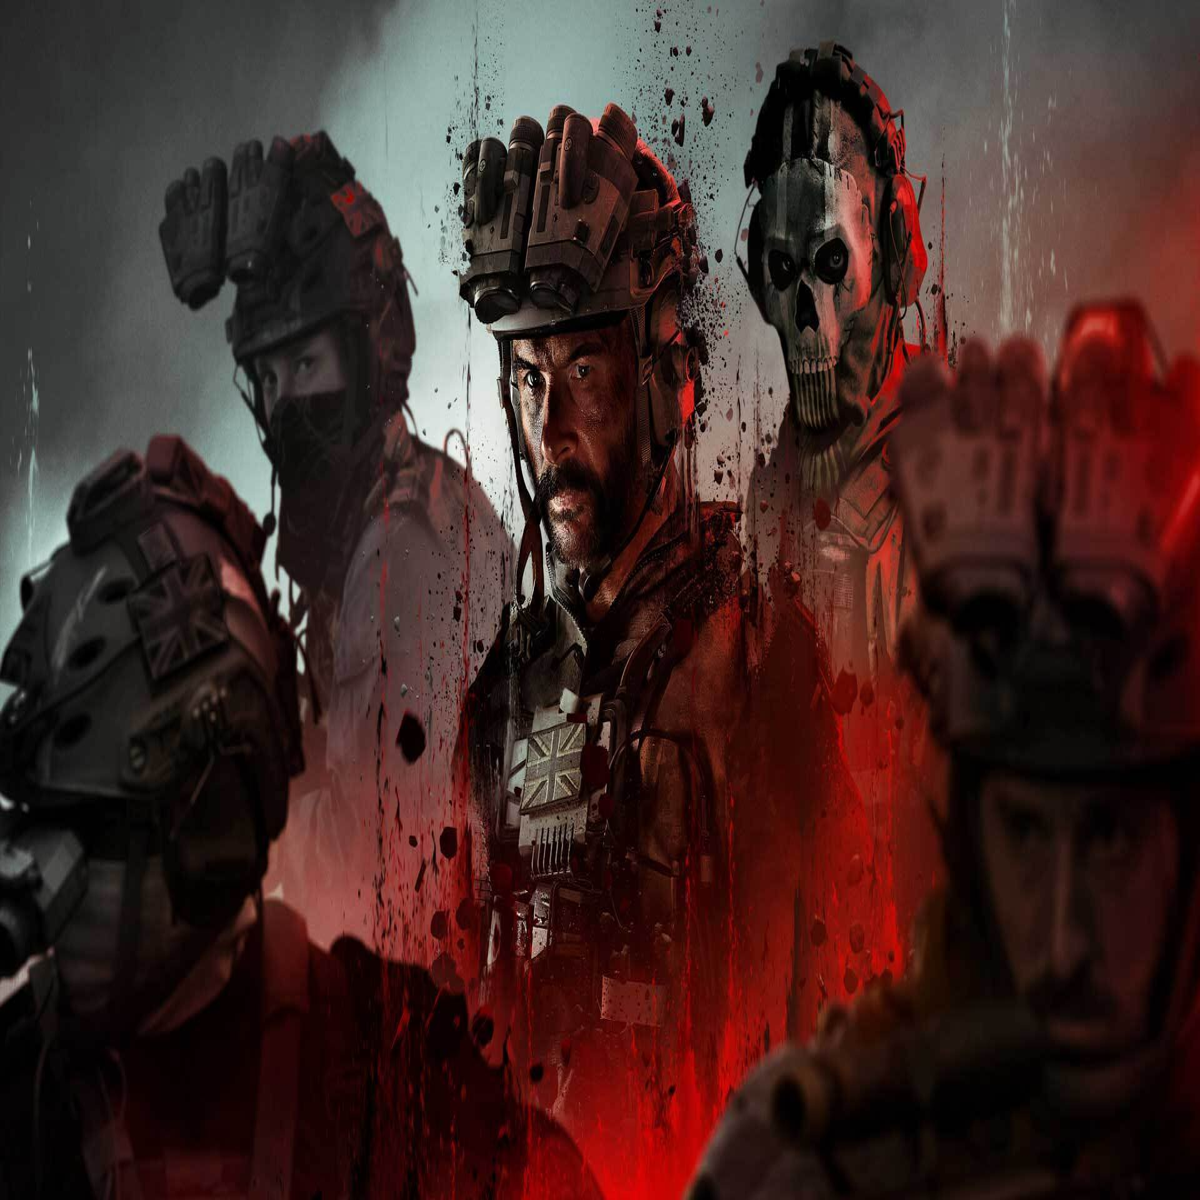 Call of Duty: Black Ops Gulf War pode ser o primeiro a entrar